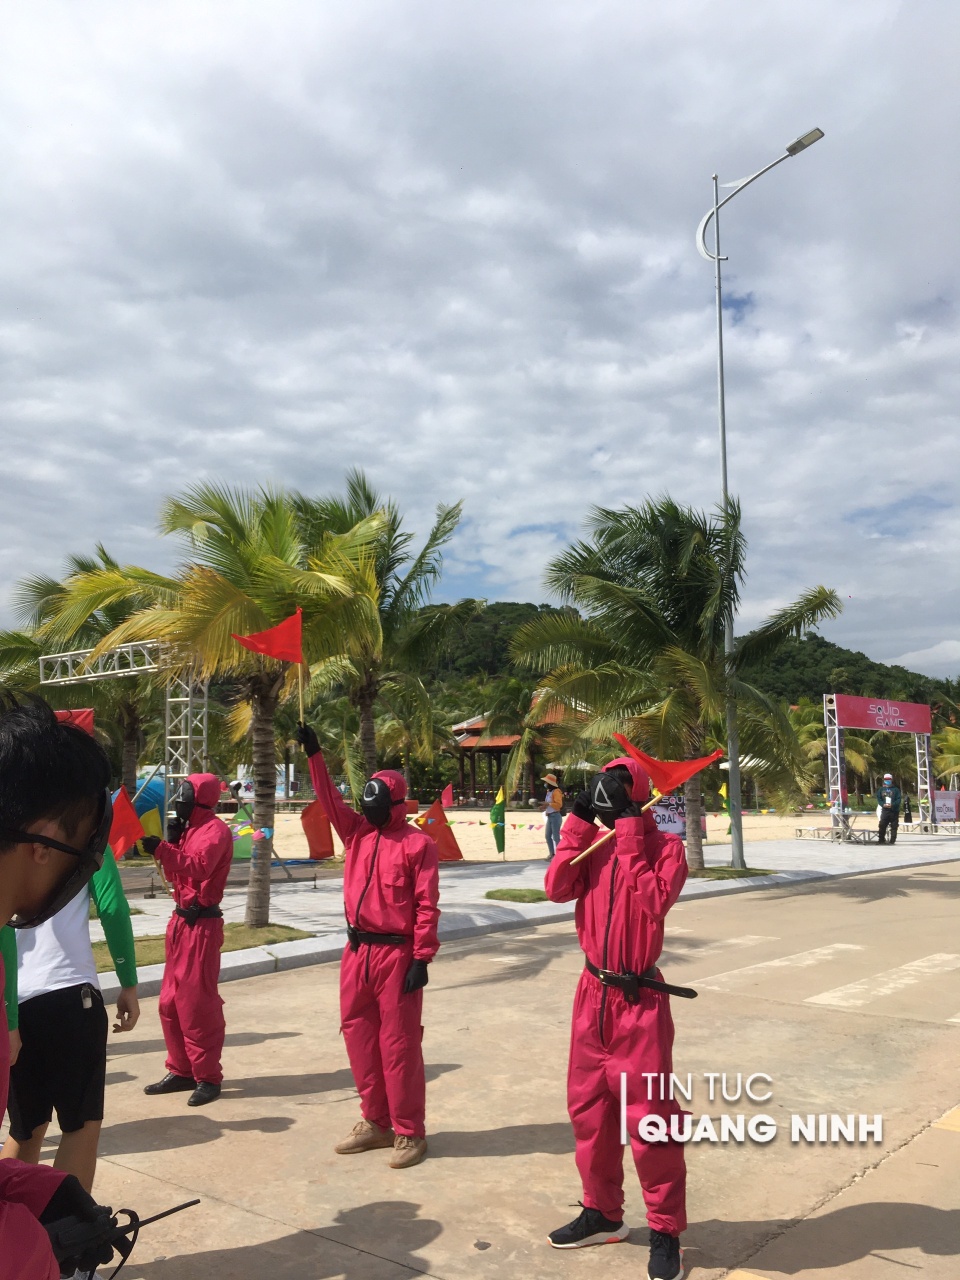 Hot: Cận cảnh Squid game diễn ra tại Hạ Long, netizen an ủi Fake một tí nhưng vui